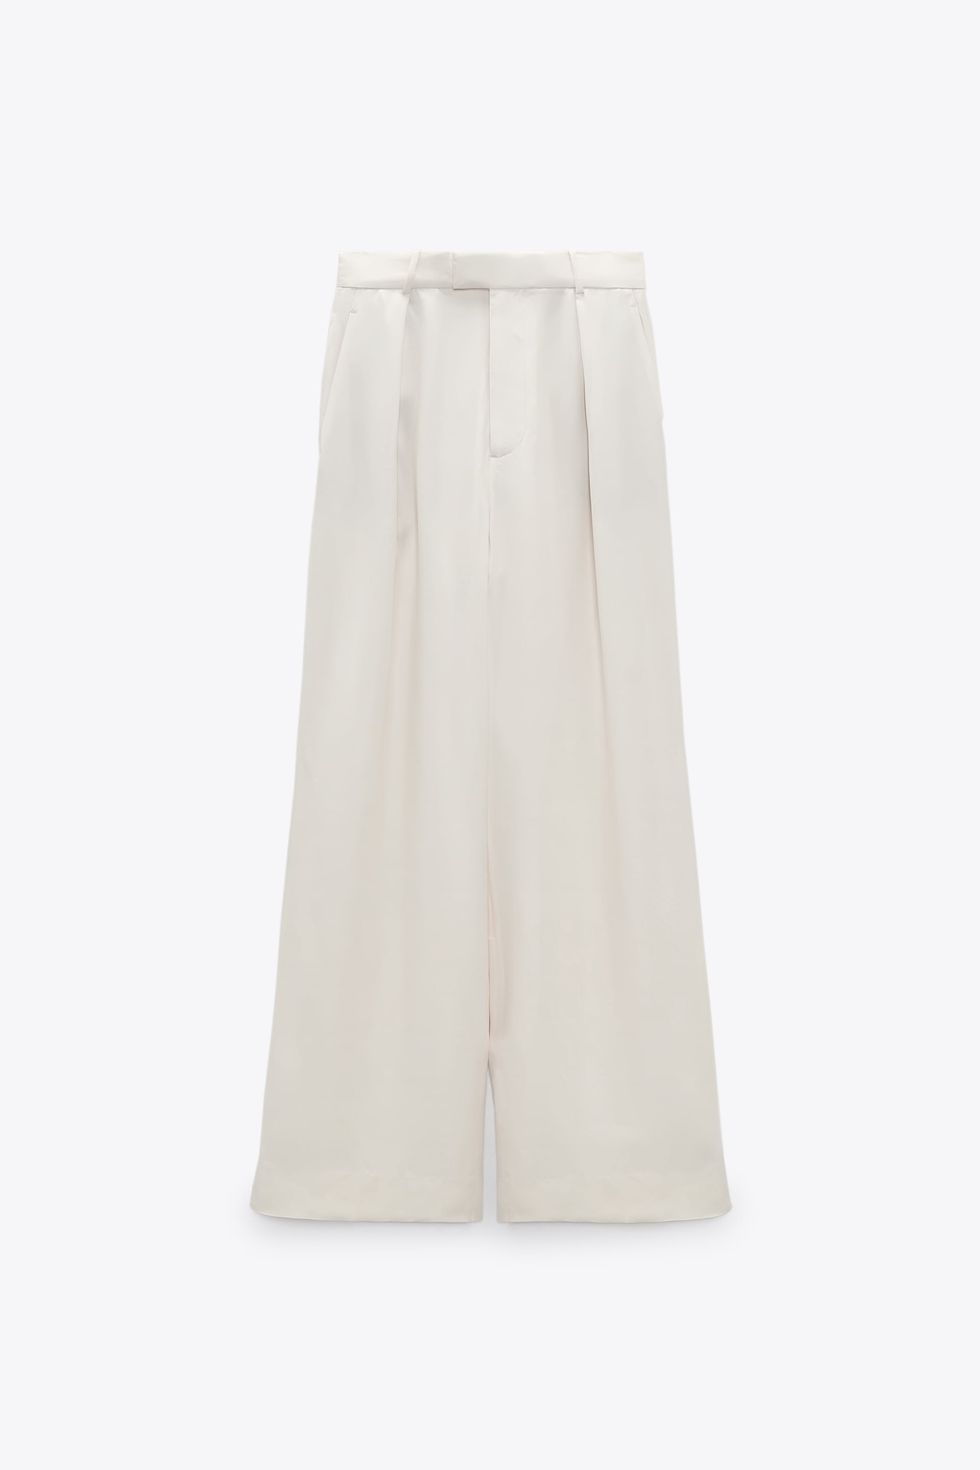 Los pantalones anchos satinados blancos de Zara